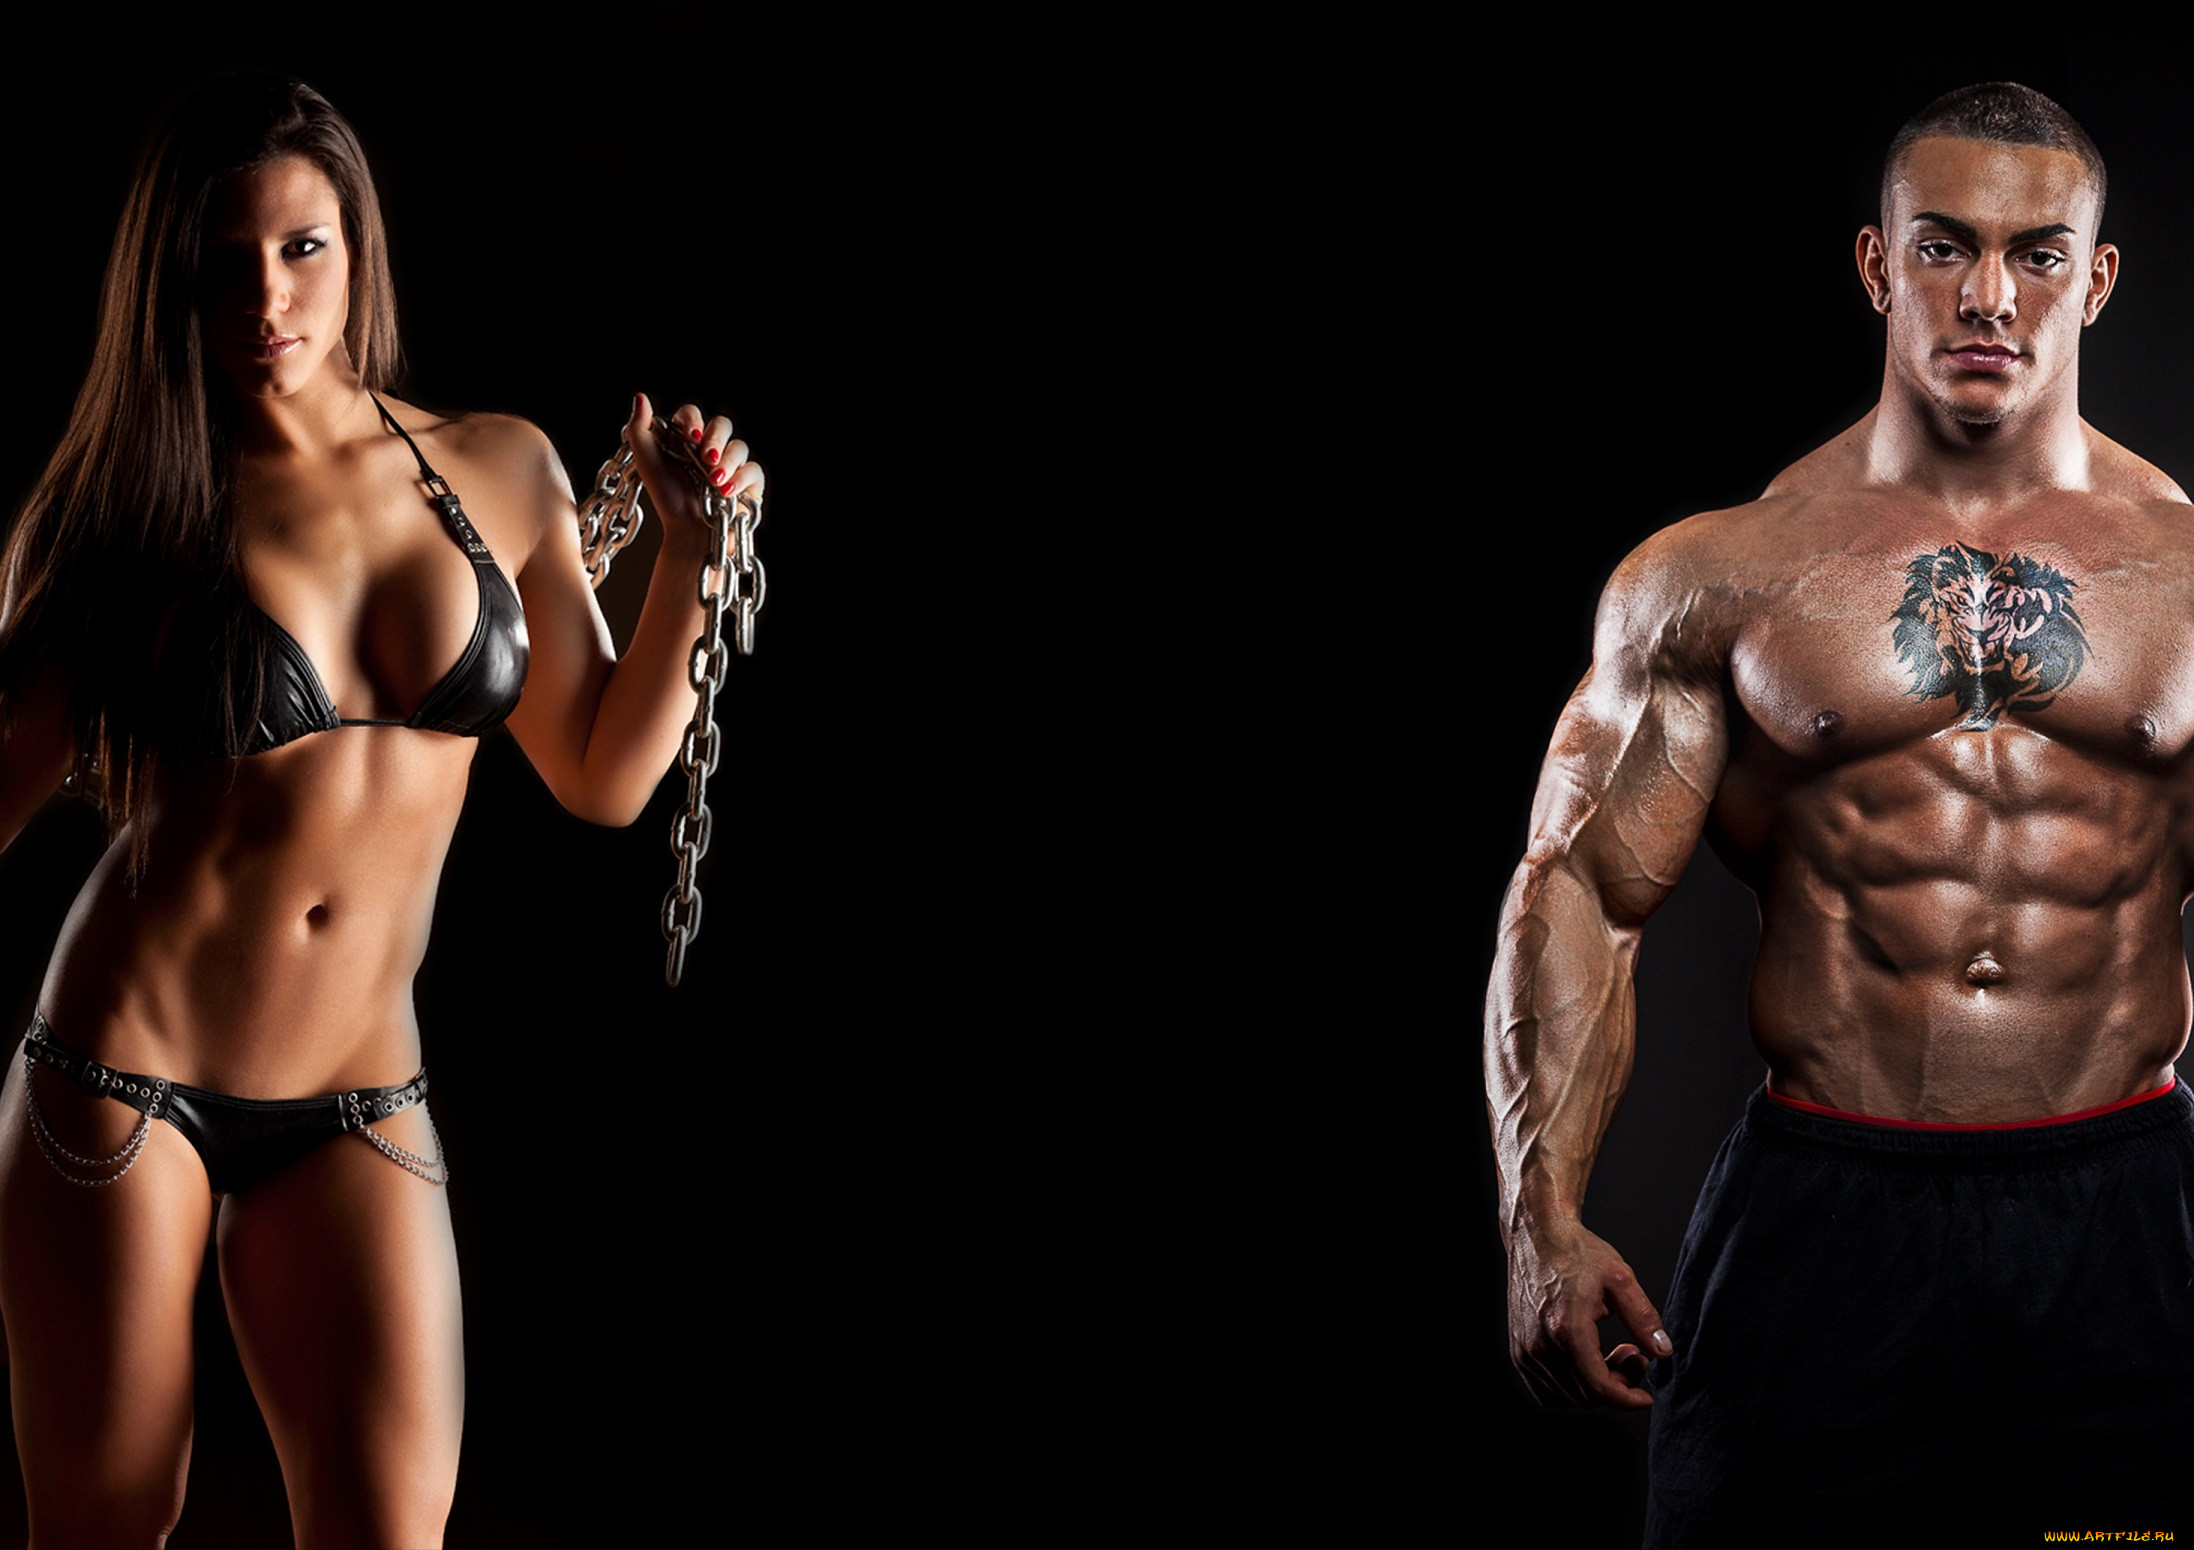 Bodybuilding couple